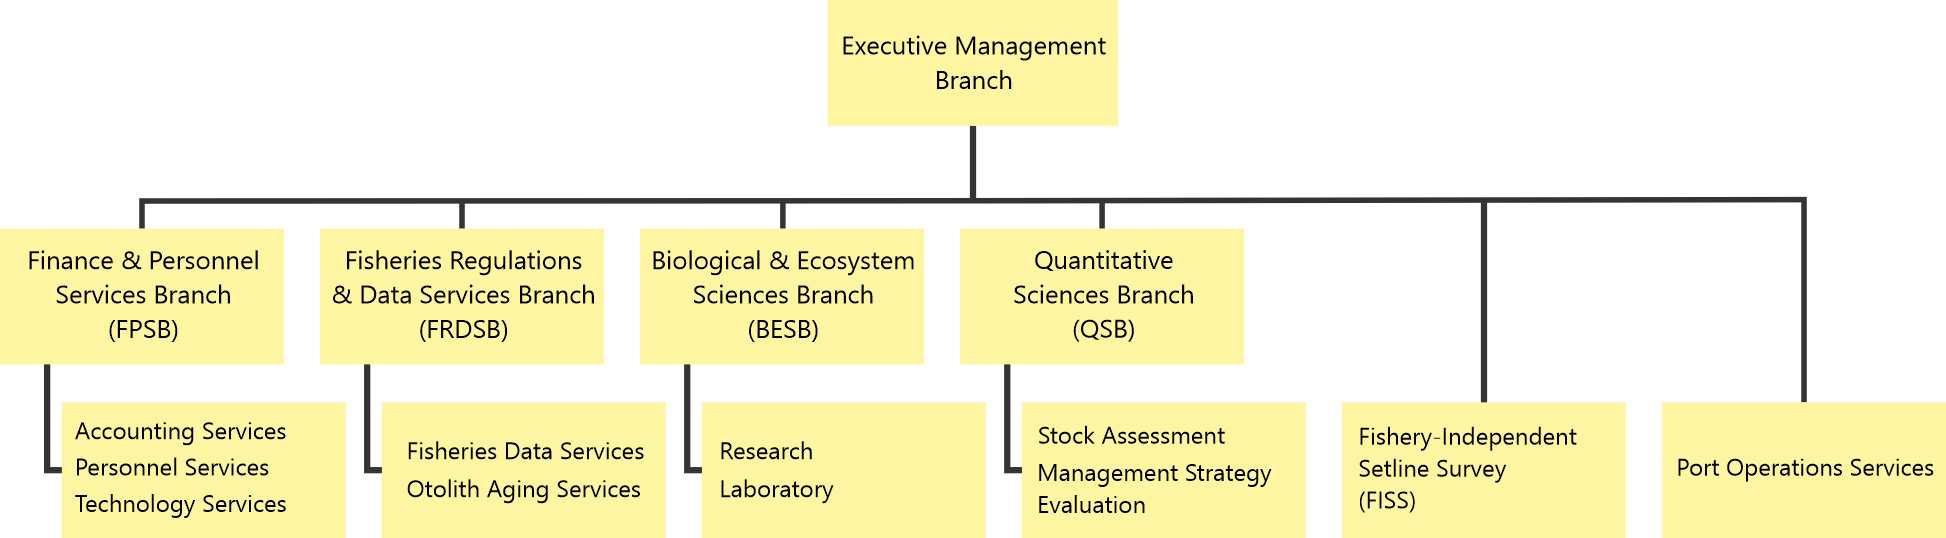 staff-secretariat-organisation-structure.png